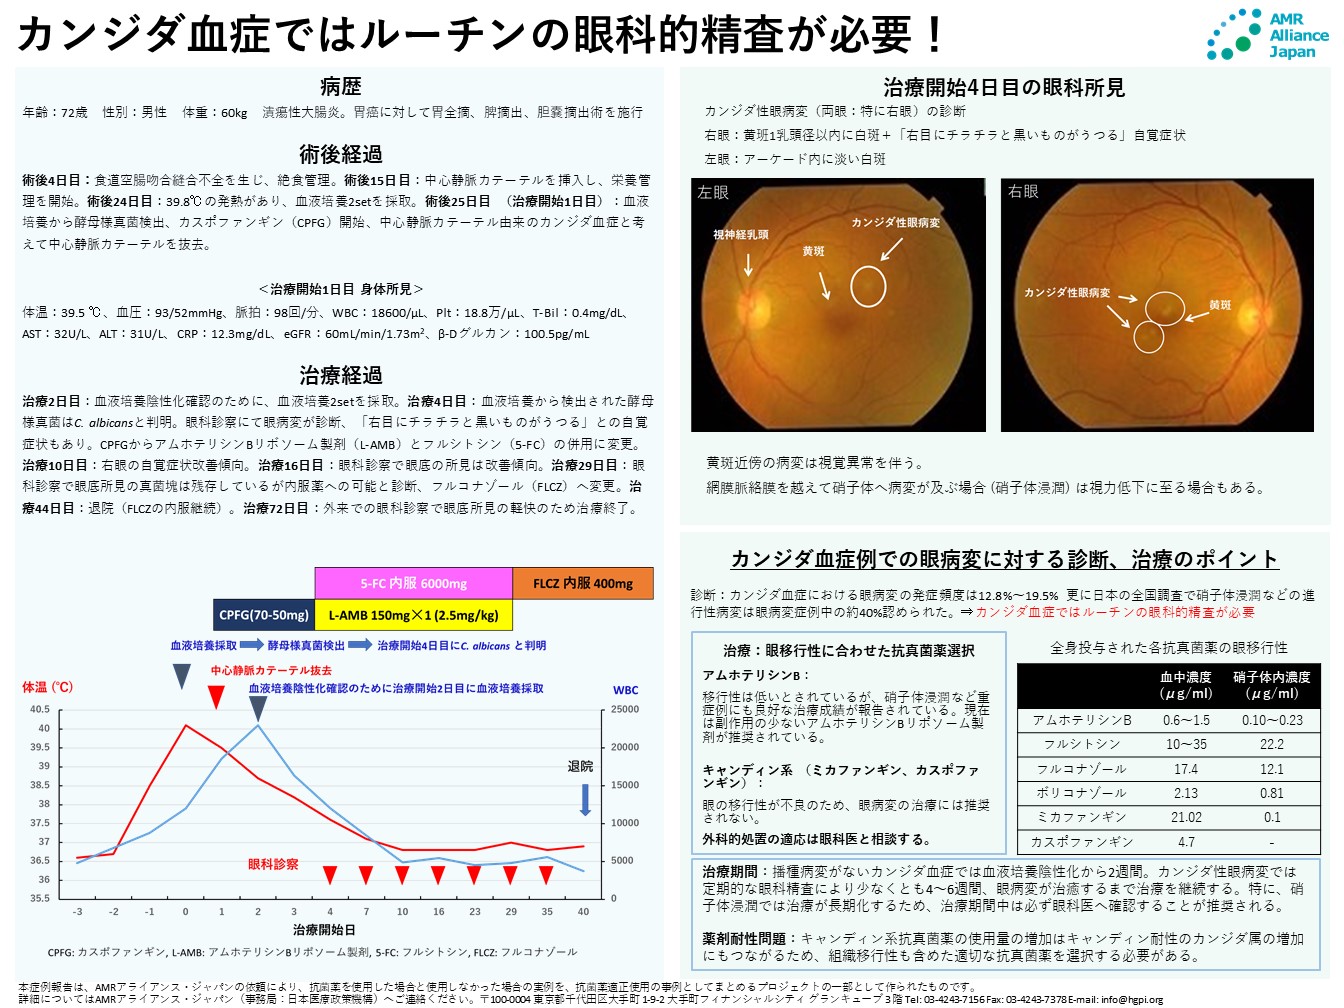 【症例報告】植田貴史氏「カンジダ血症ではルーチンの眼科的精査が必要！」（AMRアライアンス・ジャパン、2021年11月18日）